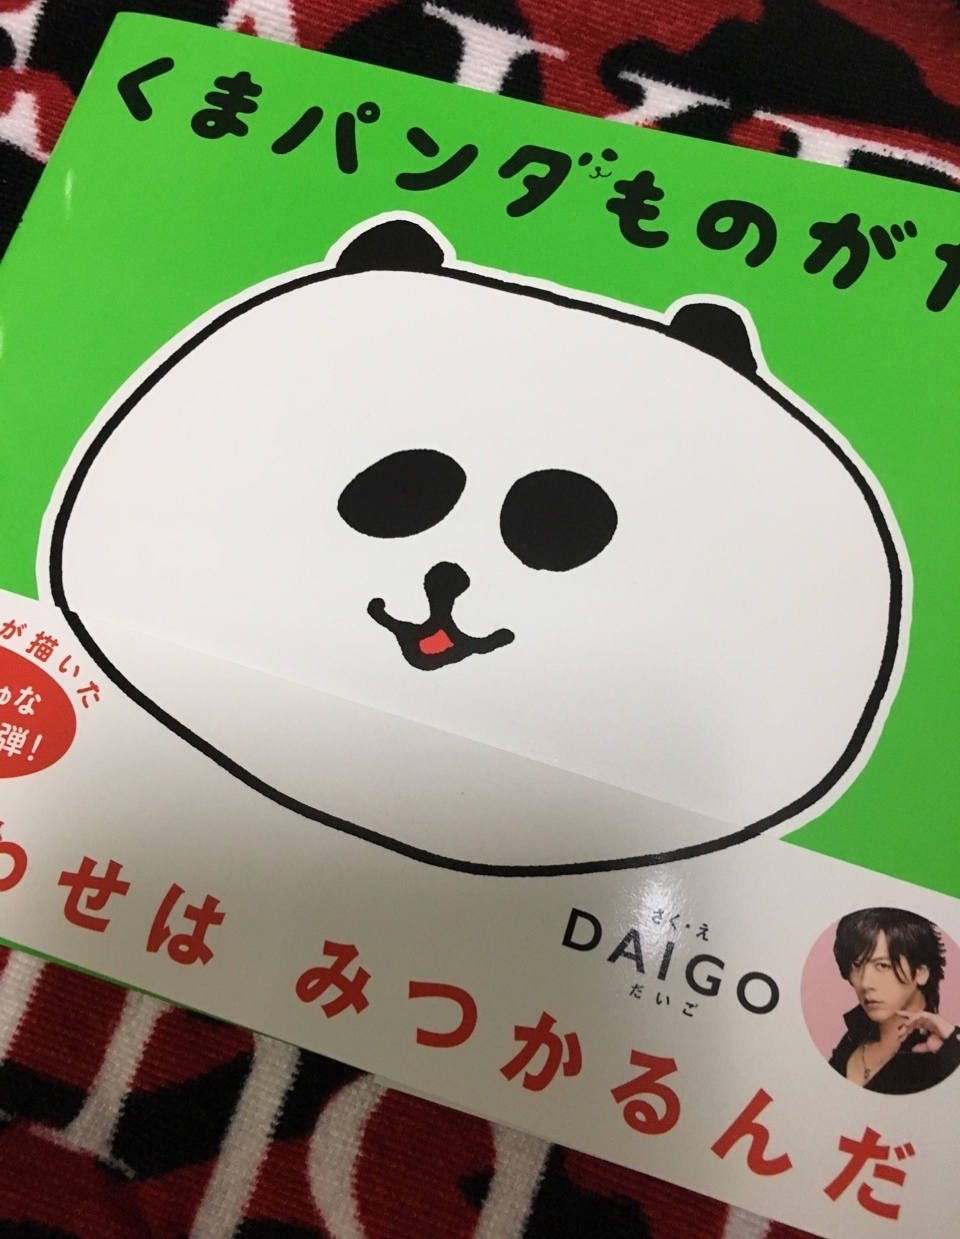 Daigo 絵本出版第2弾 くまパンダものがたり 受け渡し会 Wish